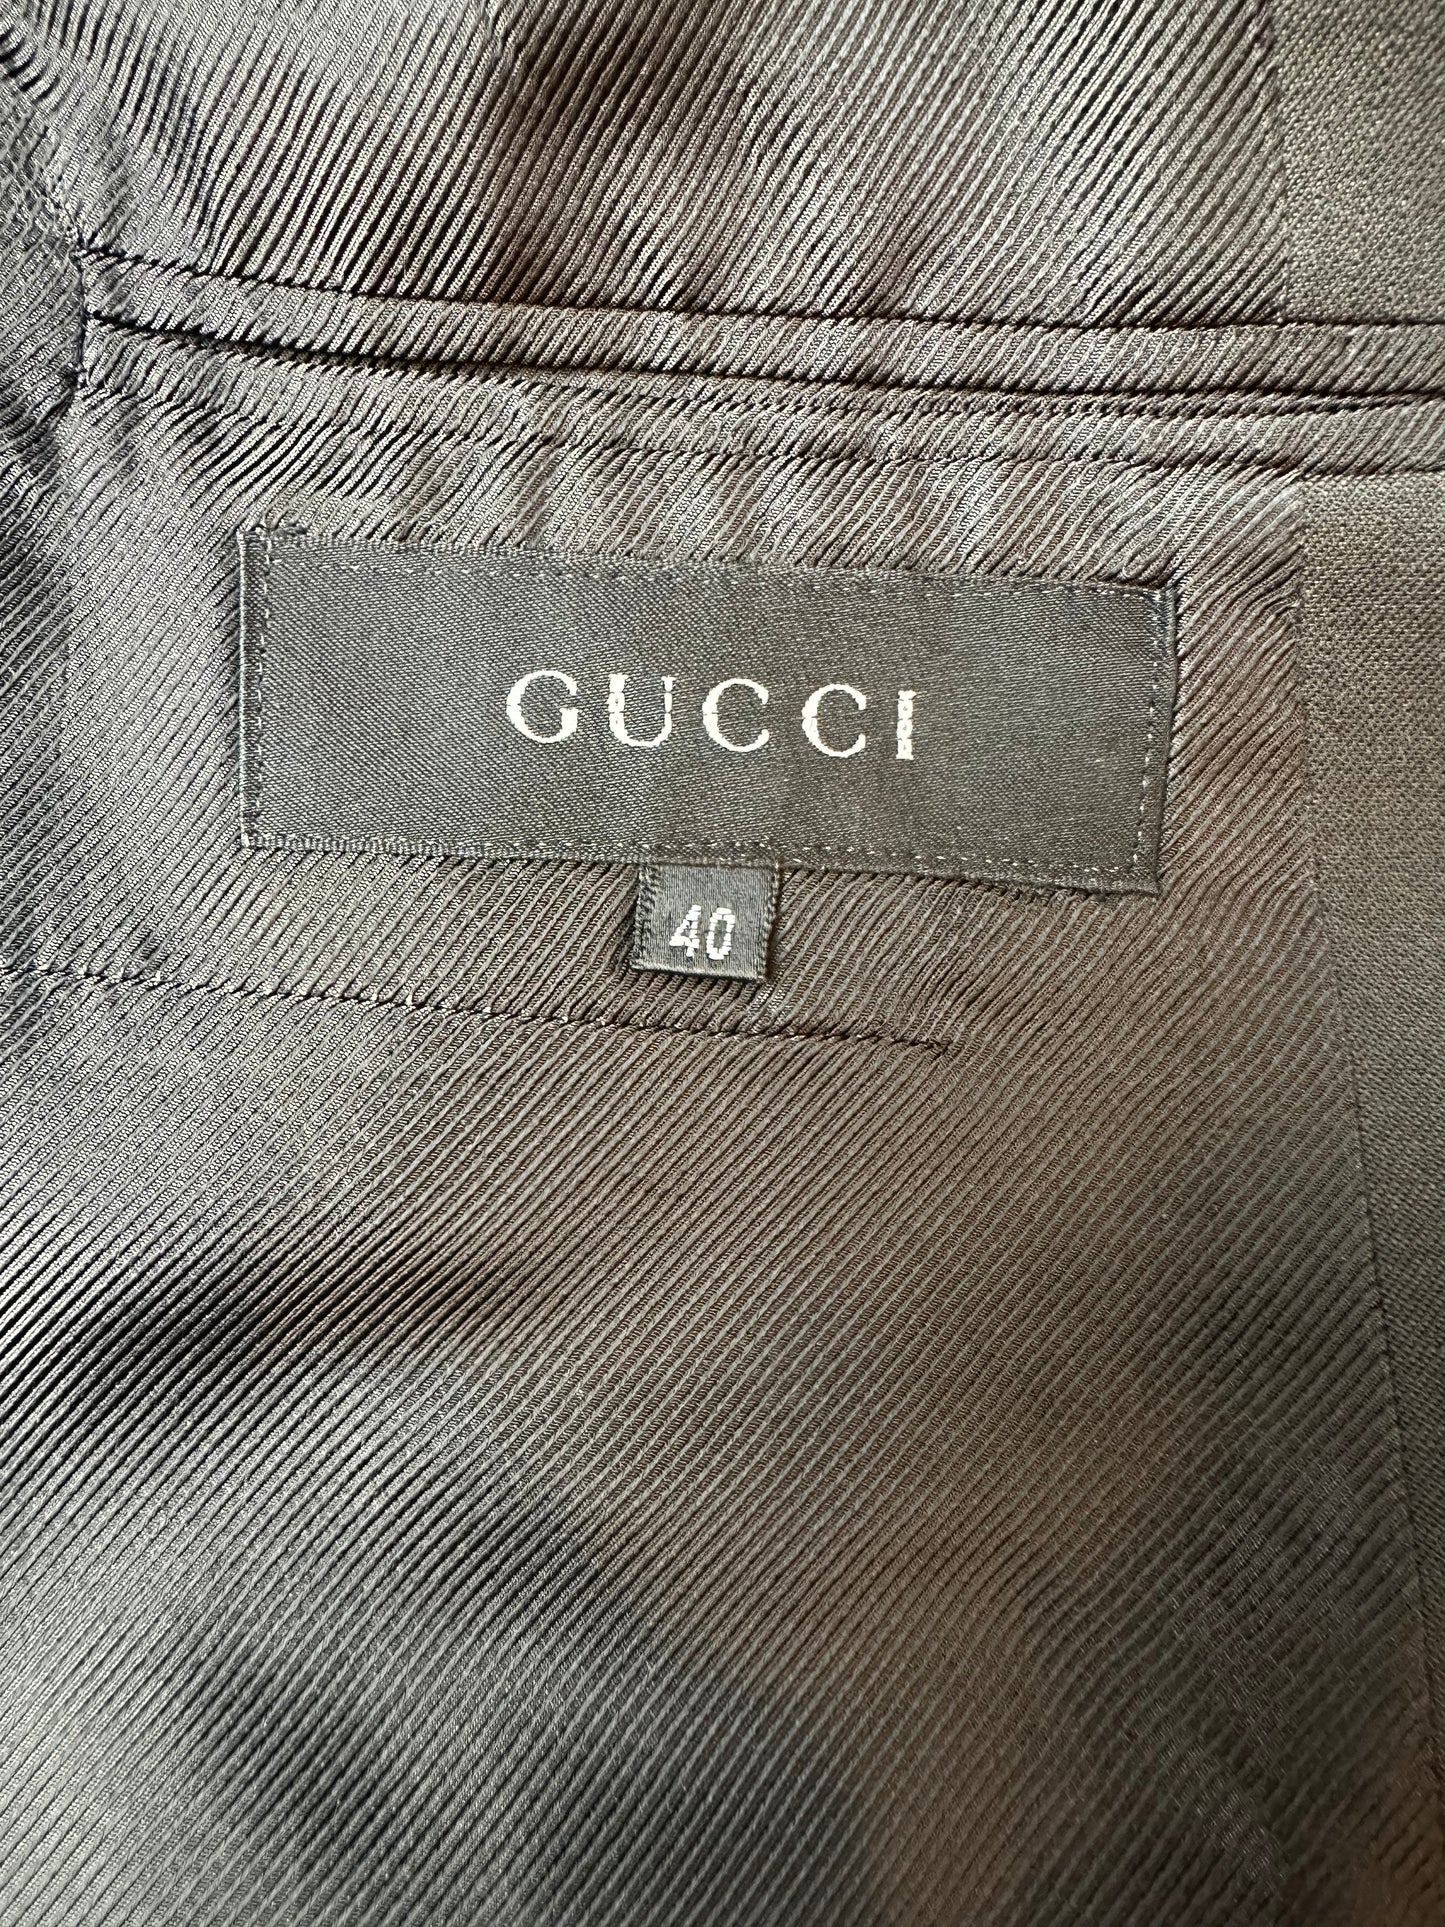 Gucci by Tom Ford FW 1995 Blazer